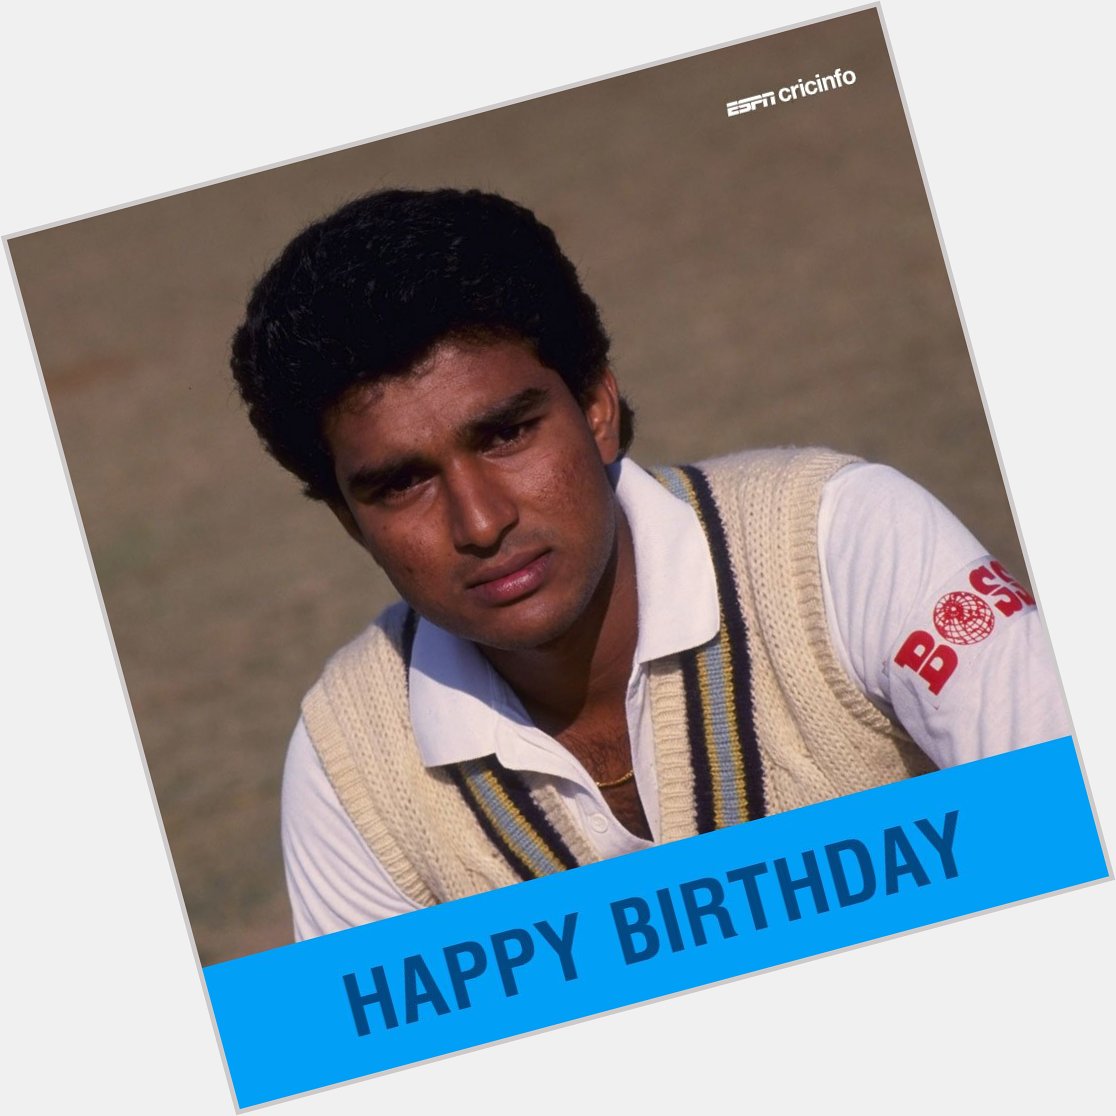  Happy birthday to Sanjay Manjrekar! 

 